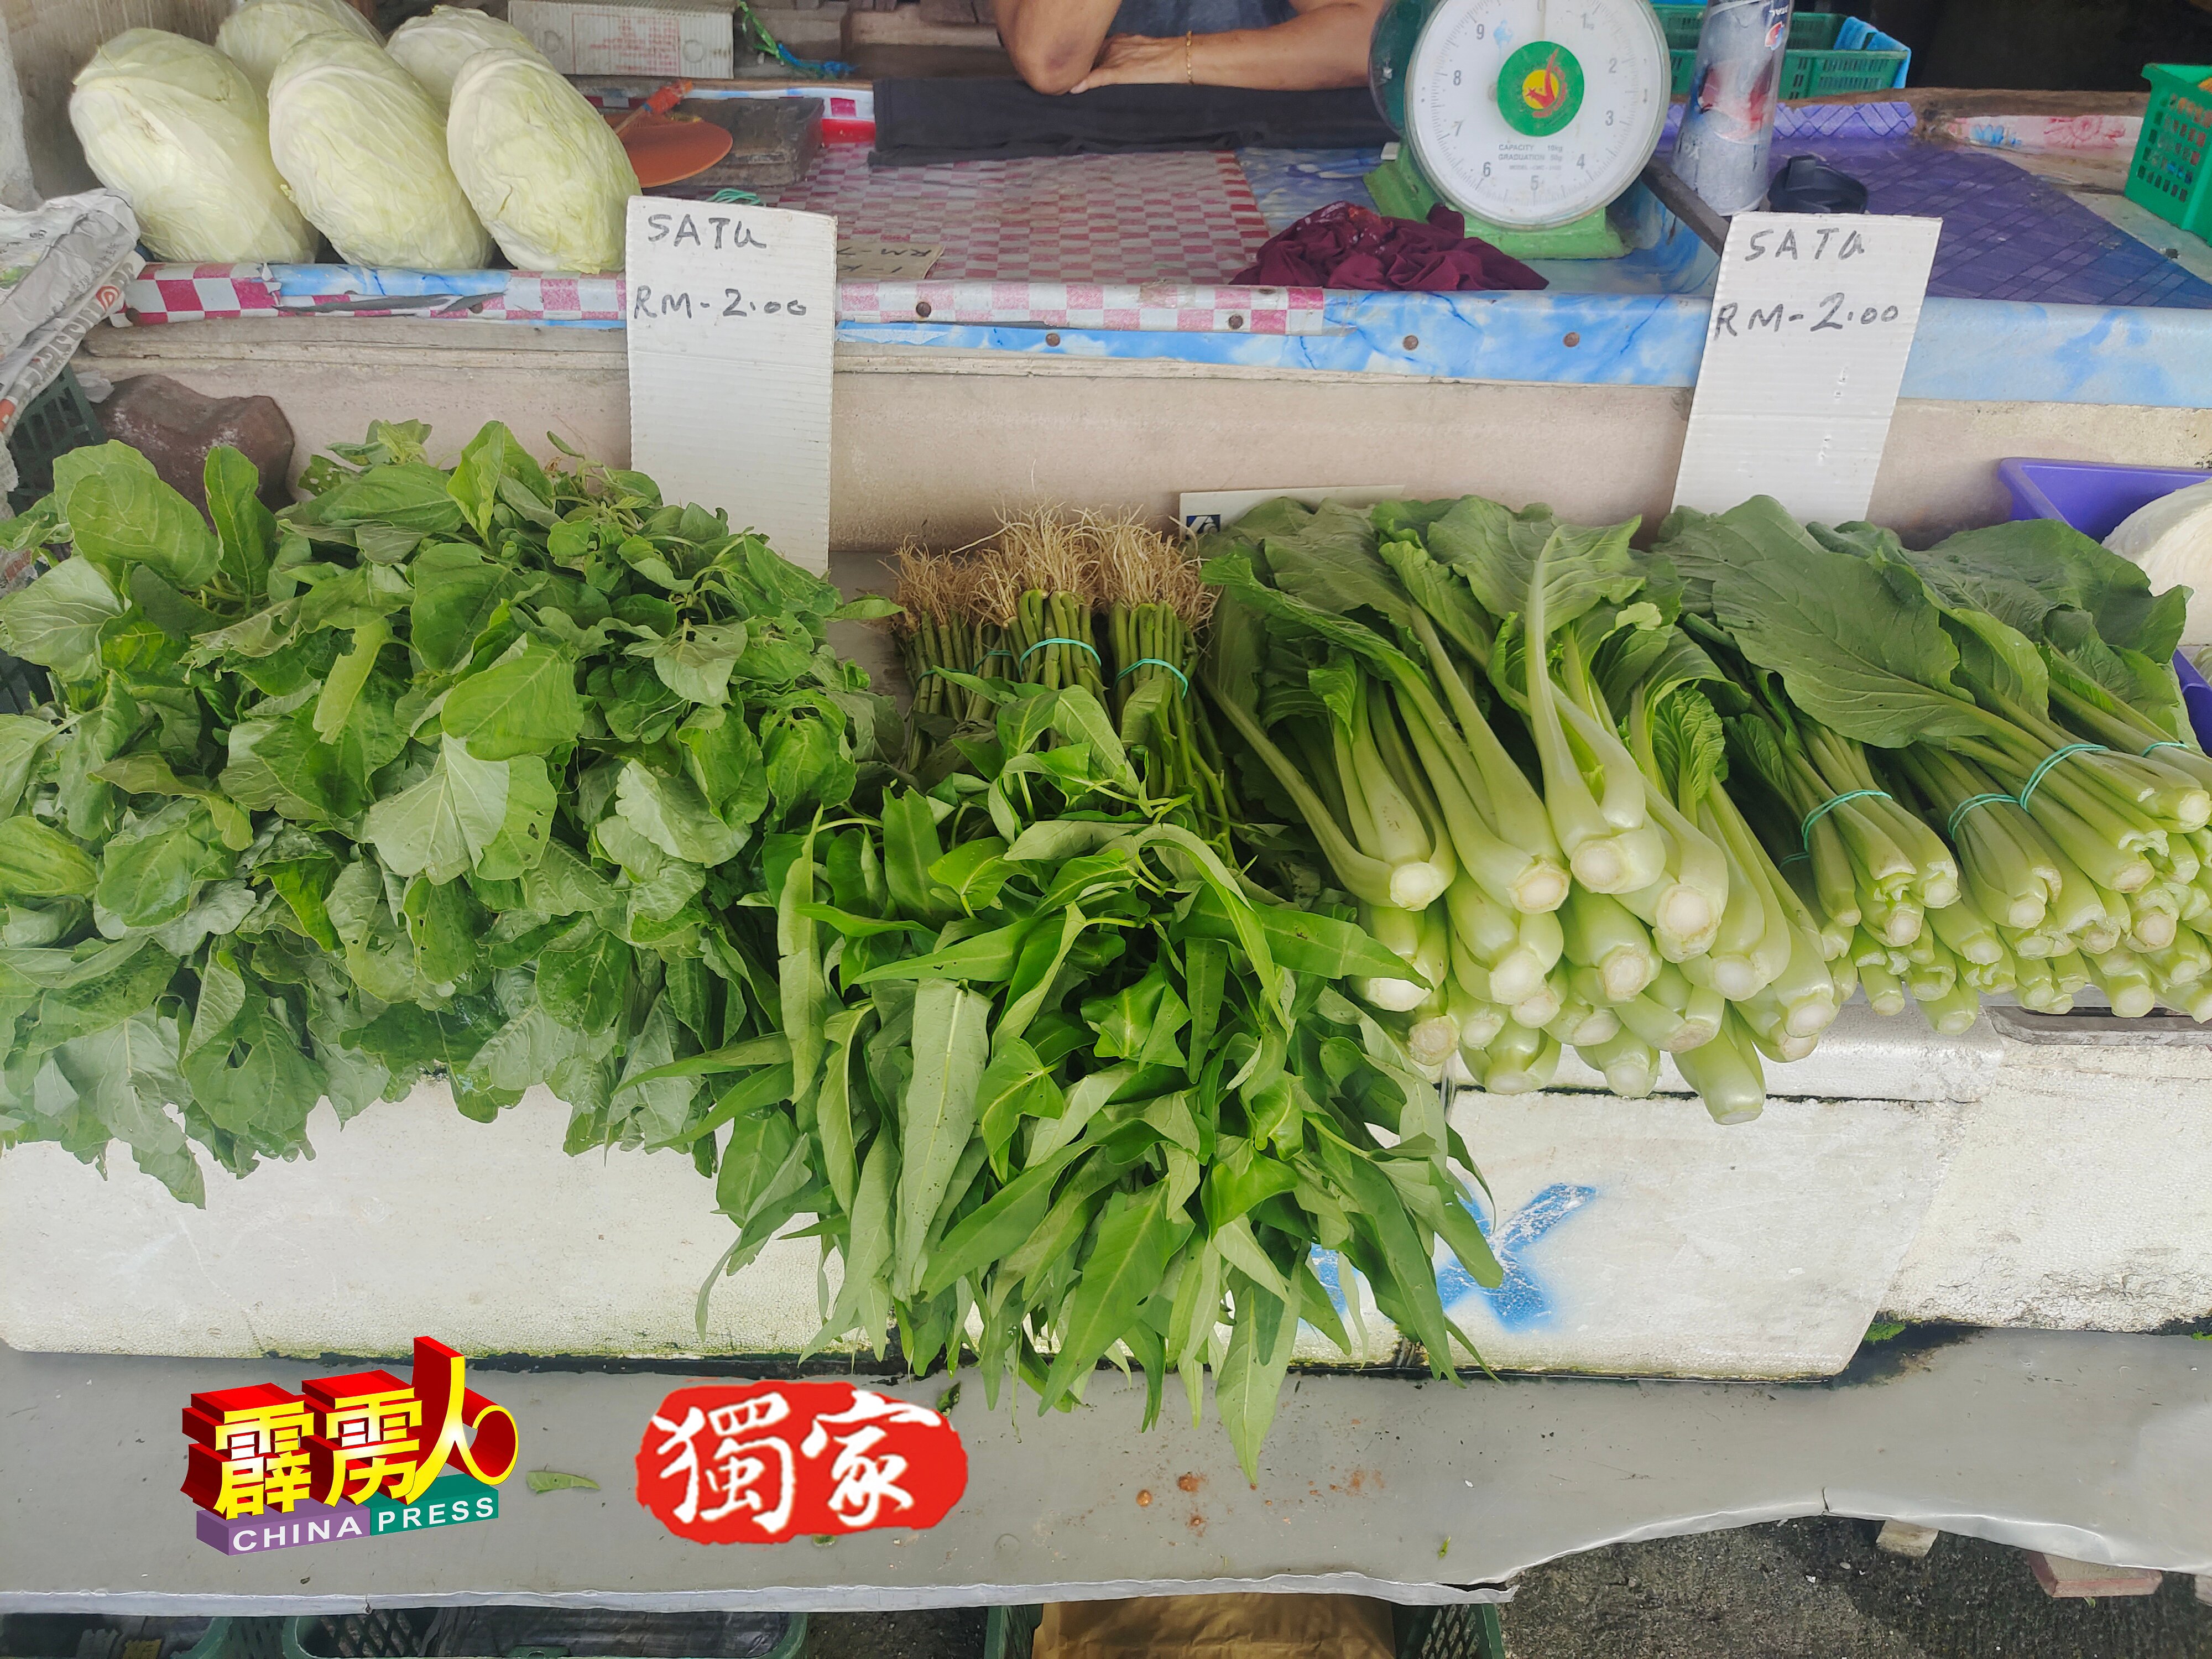 李秀蓉菜摊的所有蔬菜，一律是每束2令吉。